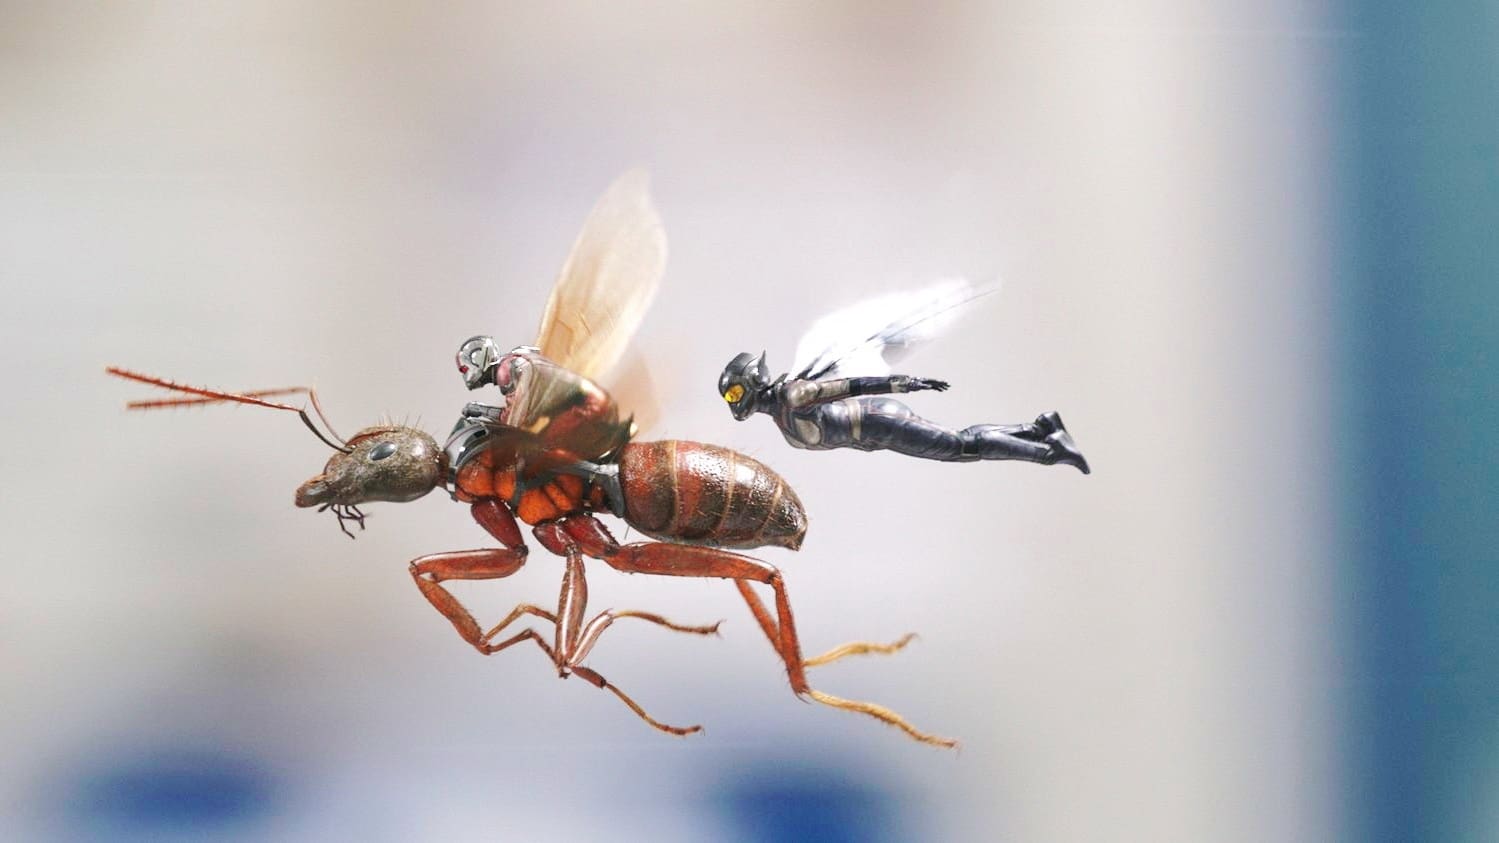 ადამიანი - ჭიანჭველა და კრაზანა (2018)